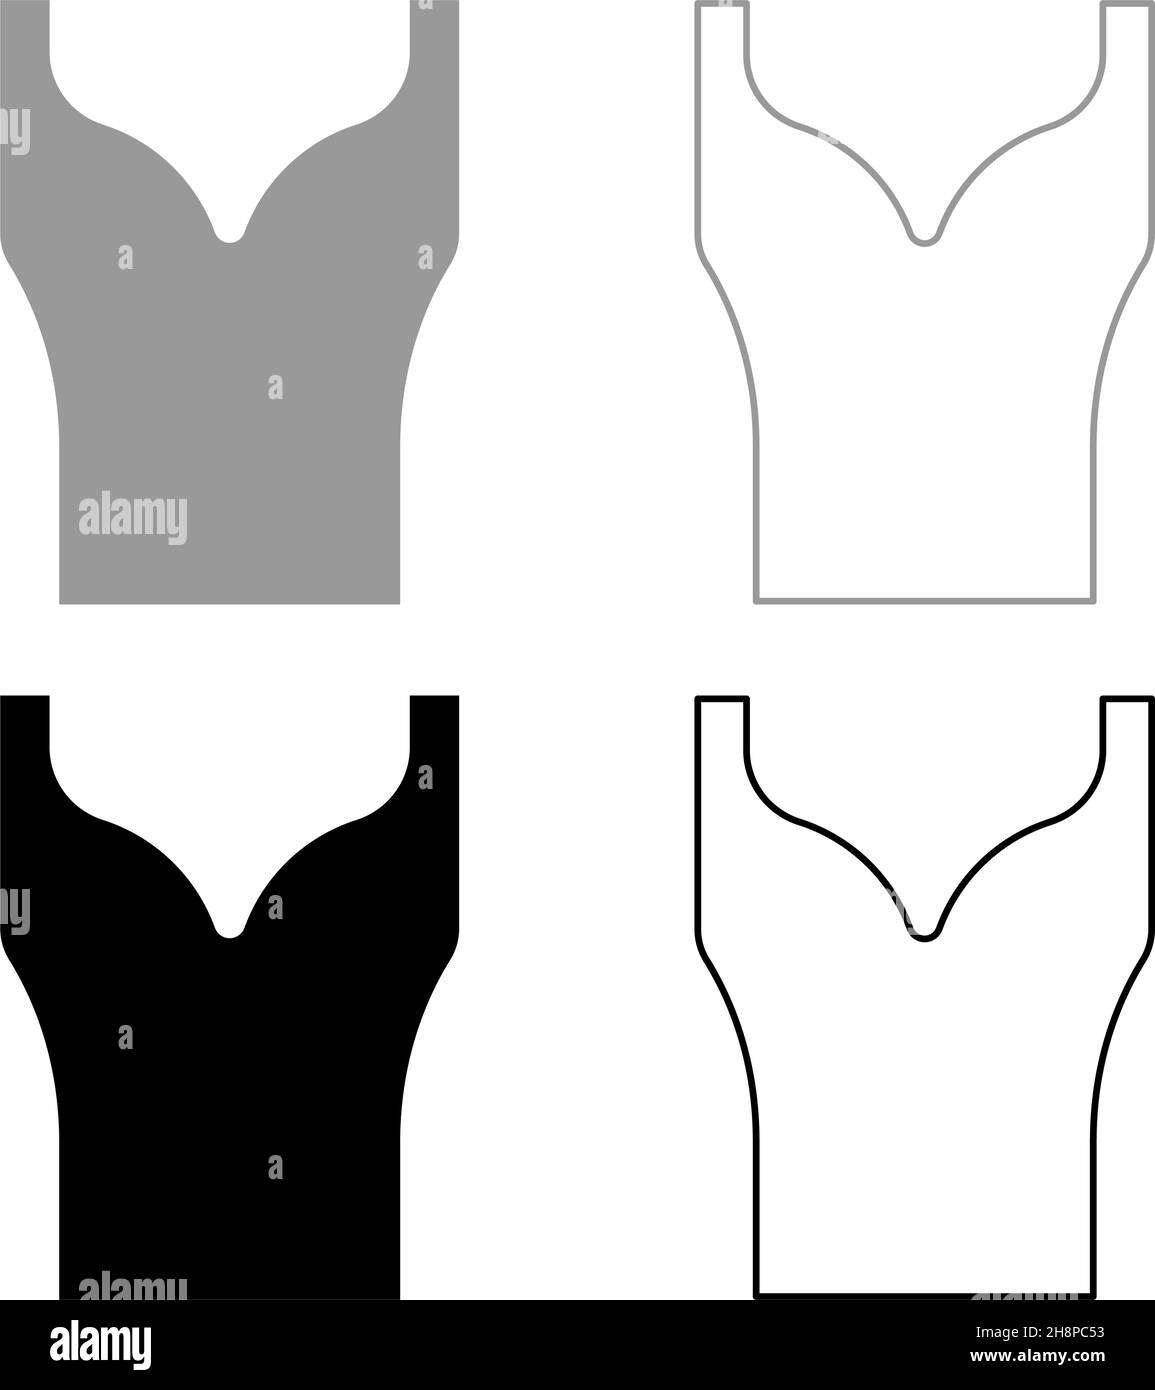 Damenbekleidung Oberteil Kleid Jersey Hemd Bluse Pullover Singlet Set Icon grau schwarz Farbe Vektor Illustration Bild einfach flach Stil solide füllen Stock Vektor